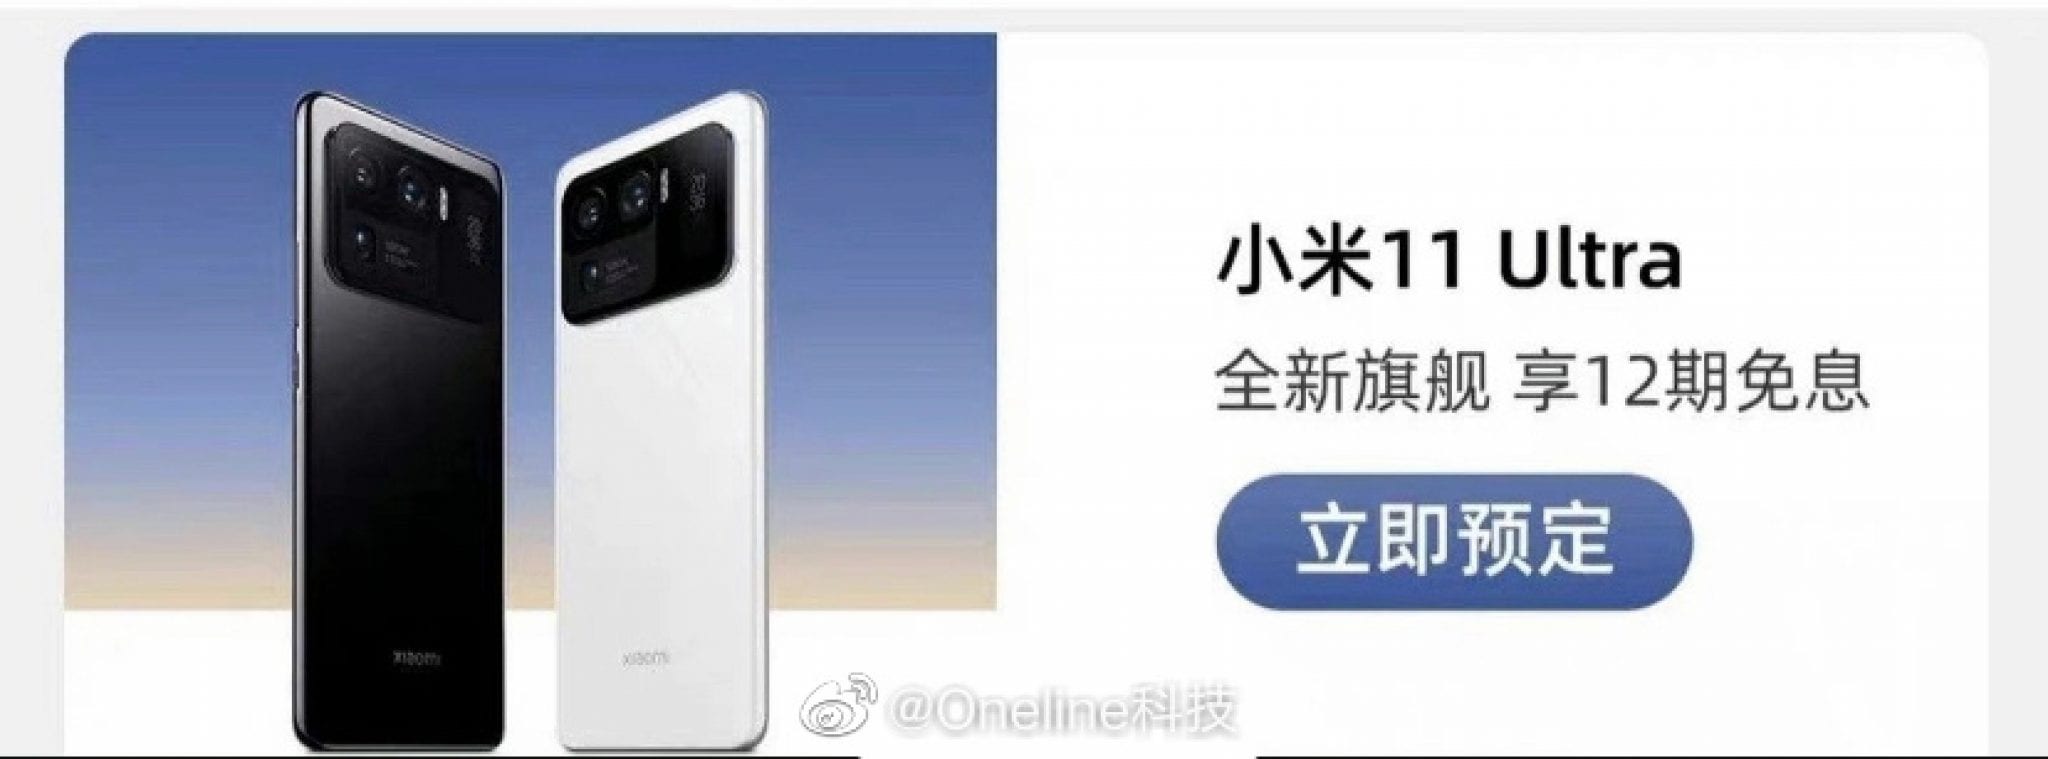 Смартфон xiaomi 16 1 тб. Leioa смартфон китайский. Китайский смартфон м 11 ультра. М11 про смартфон. Смартфон 16/1тб.